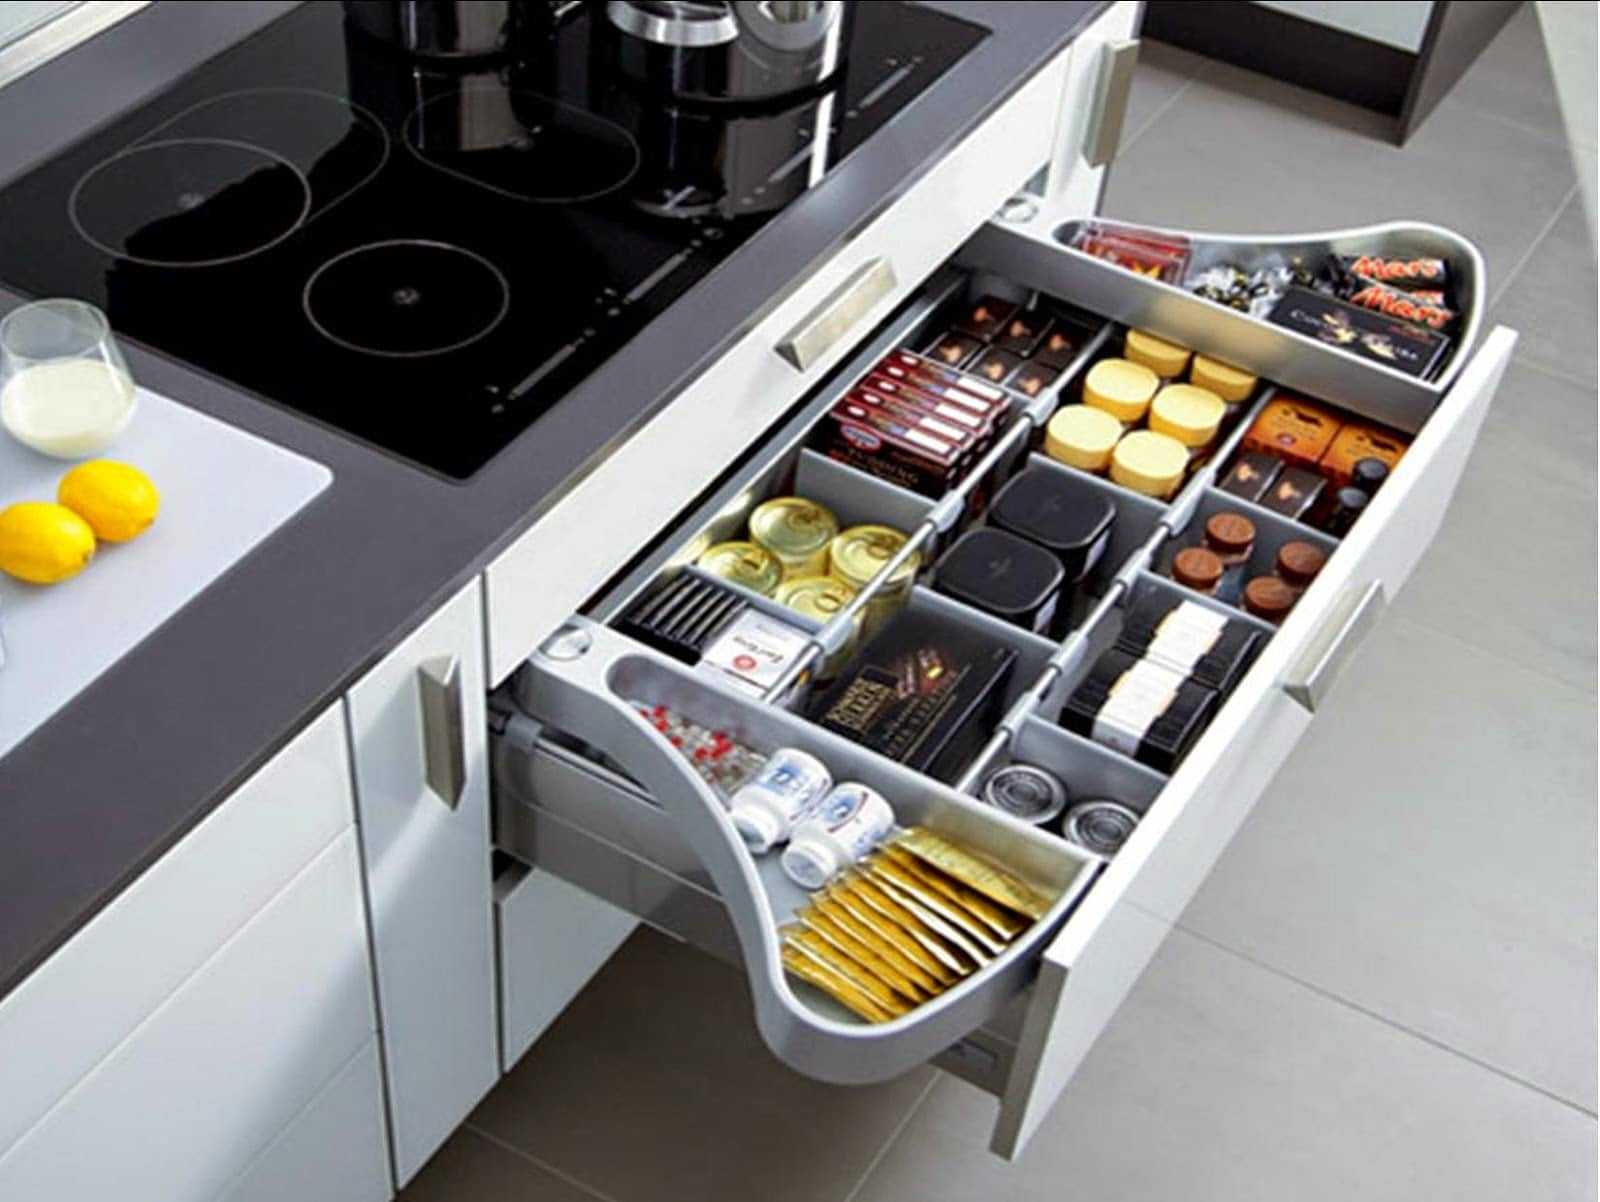 Хранение на кухне: организация порядка в кухонном помещении, шкафы и ящики | дизайн и фото